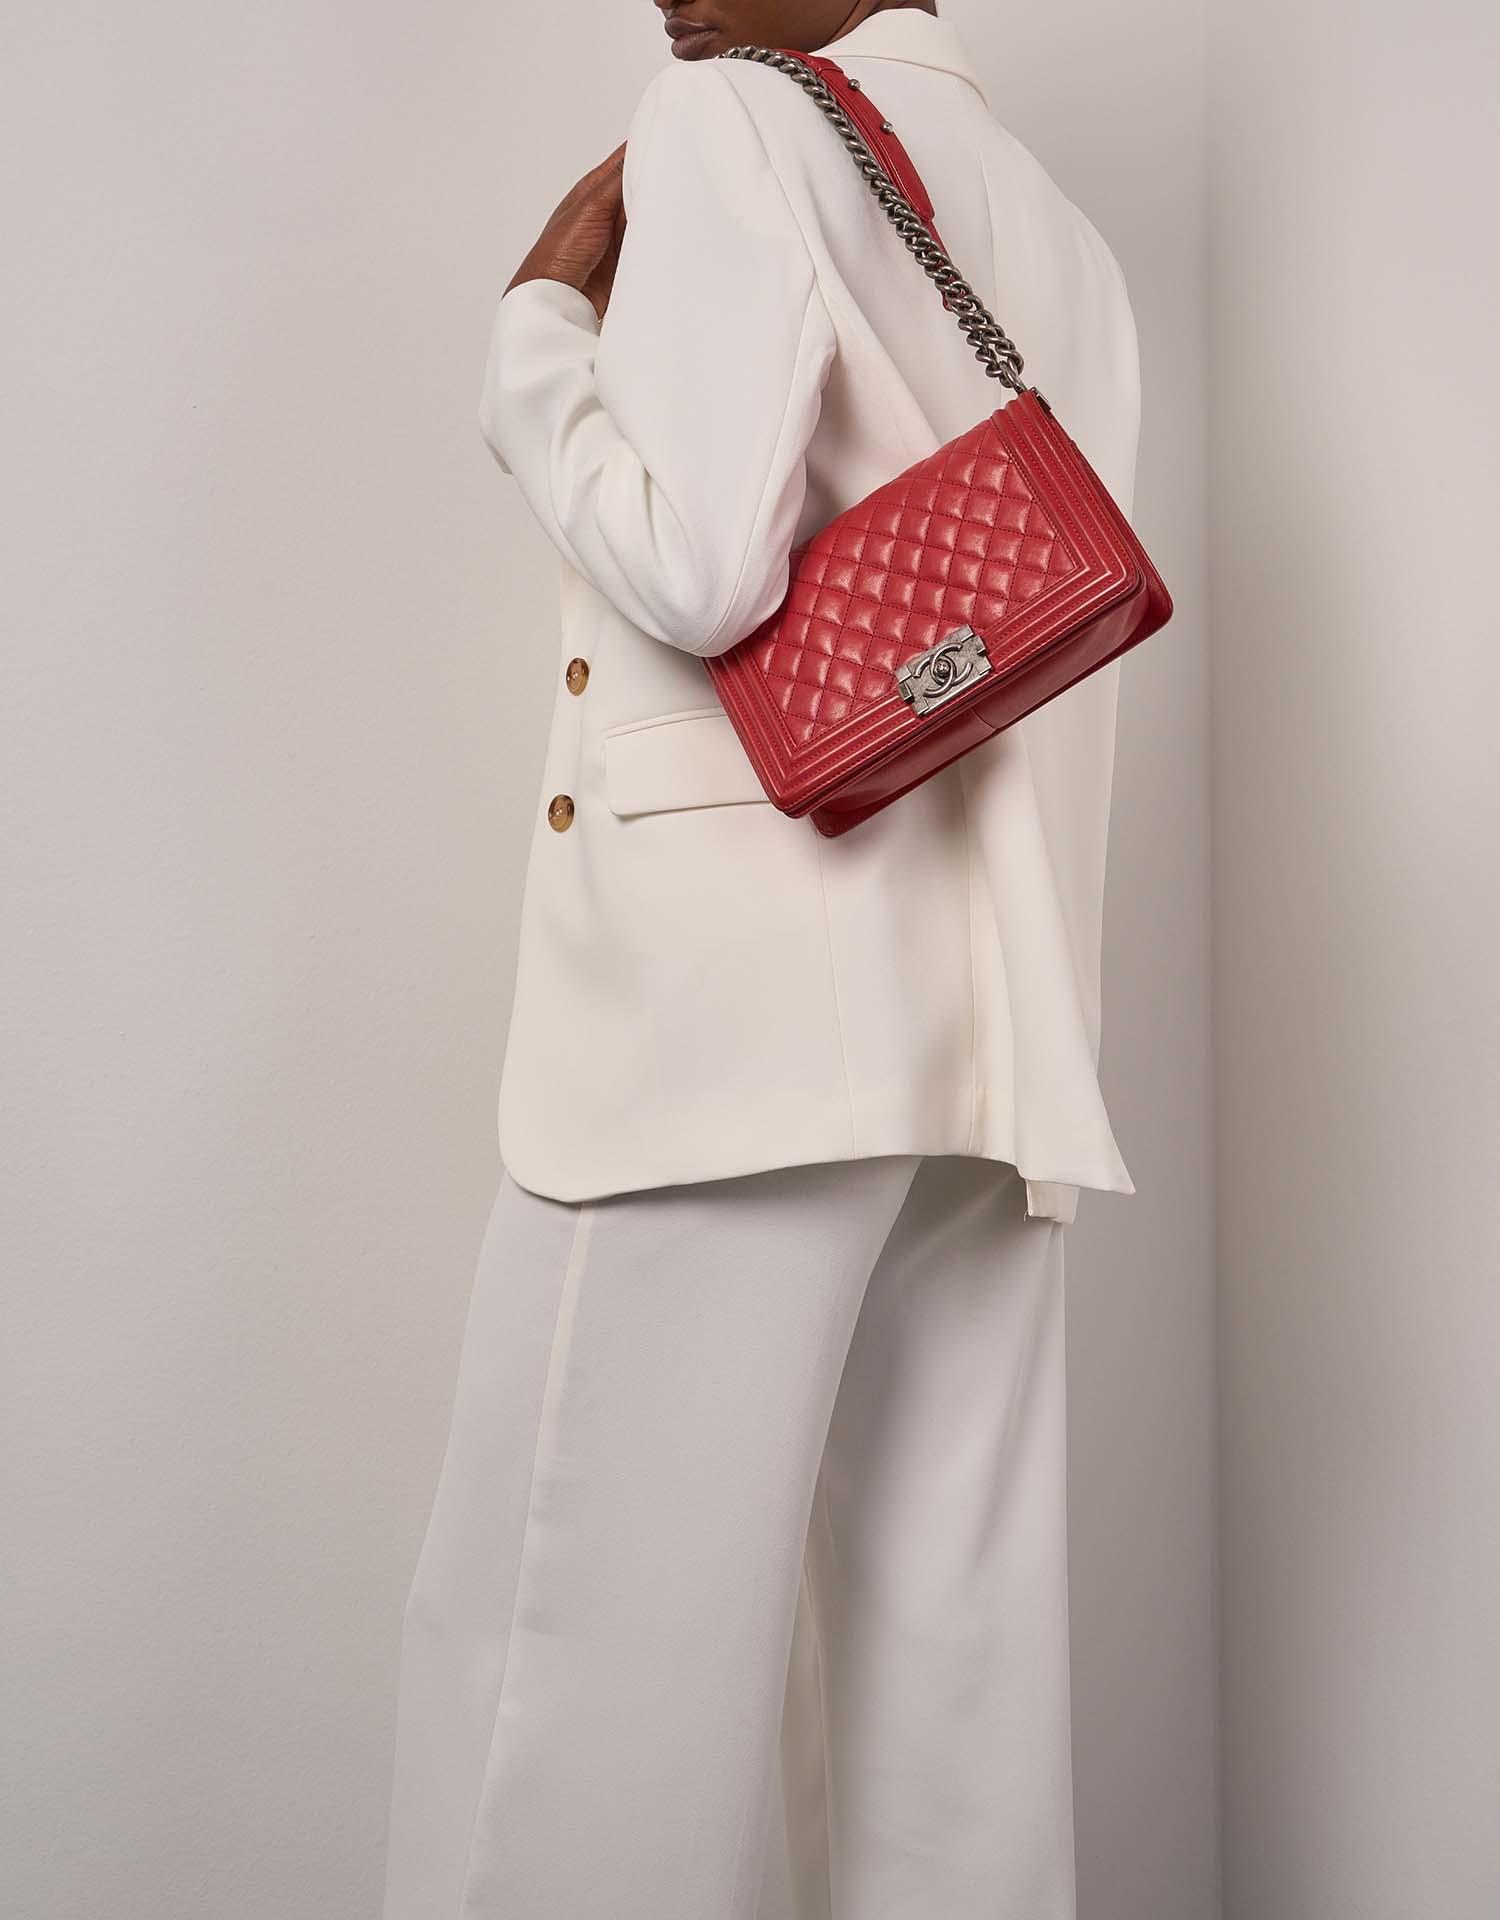 Chanel Boy OldMedium Red 1M | Verkaufen Sie Ihre Designer-Tasche auf Saclab.com